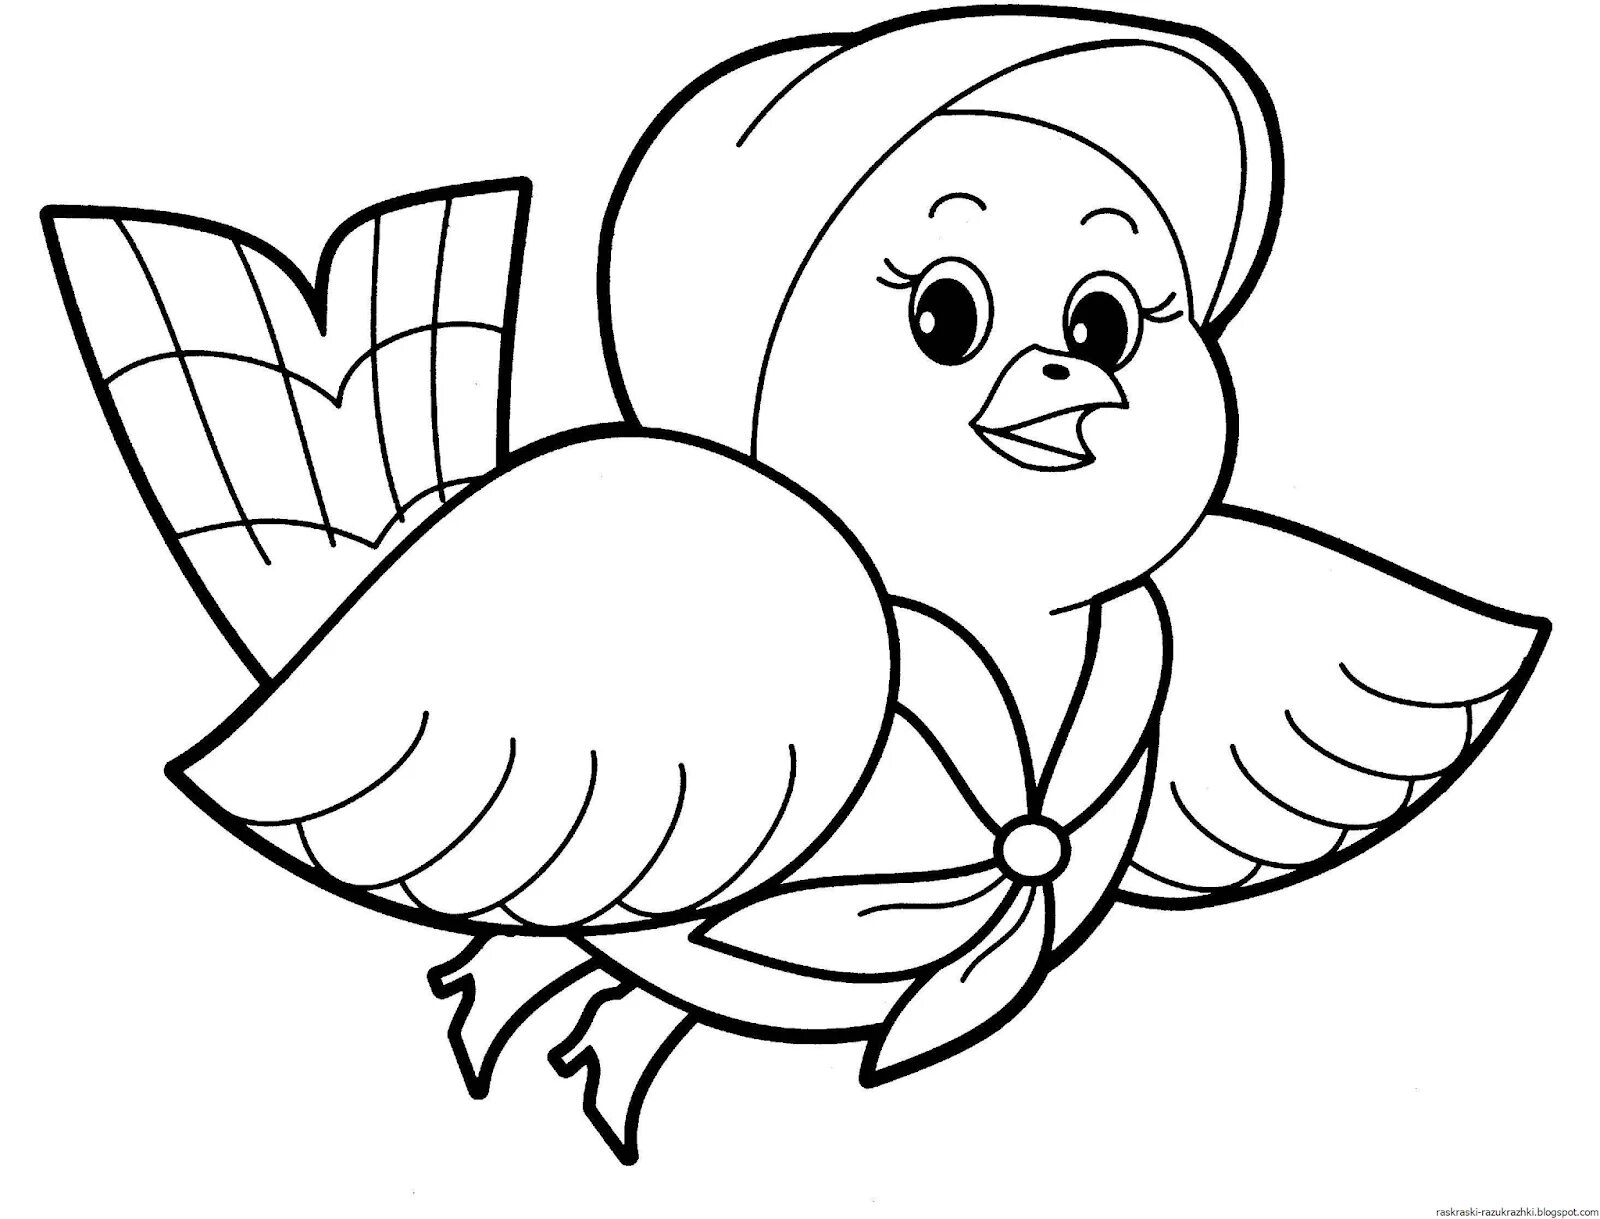 Сказочная страница раскраски птиц для детей